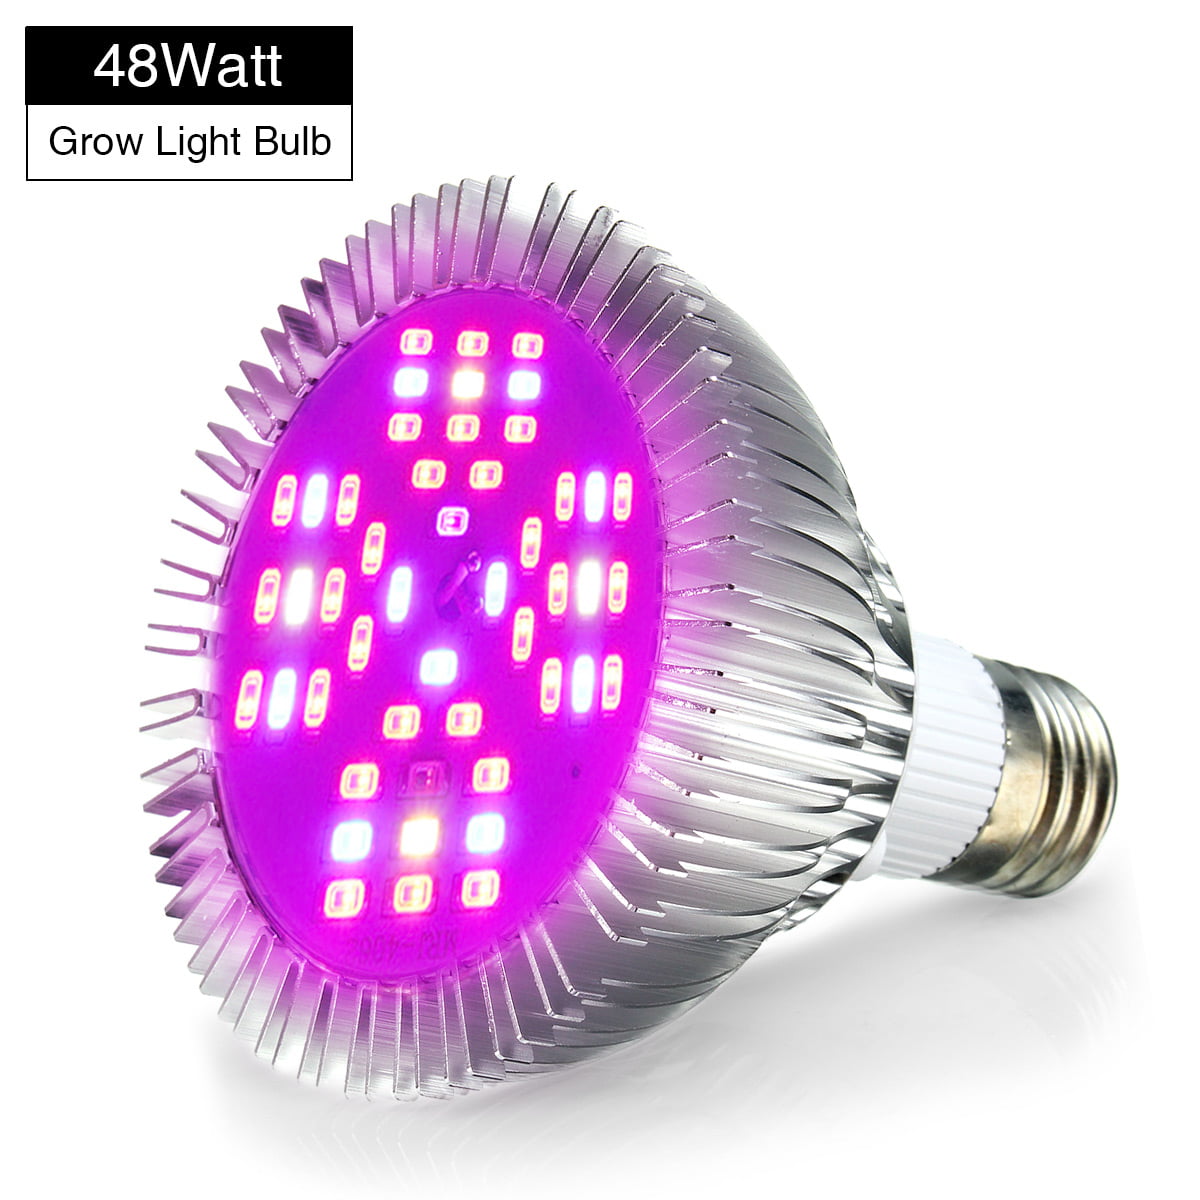 New LED Grow Light Bulb E27 Kit For FULL SPECTRUM Indoor Plants And Flowers 220v 